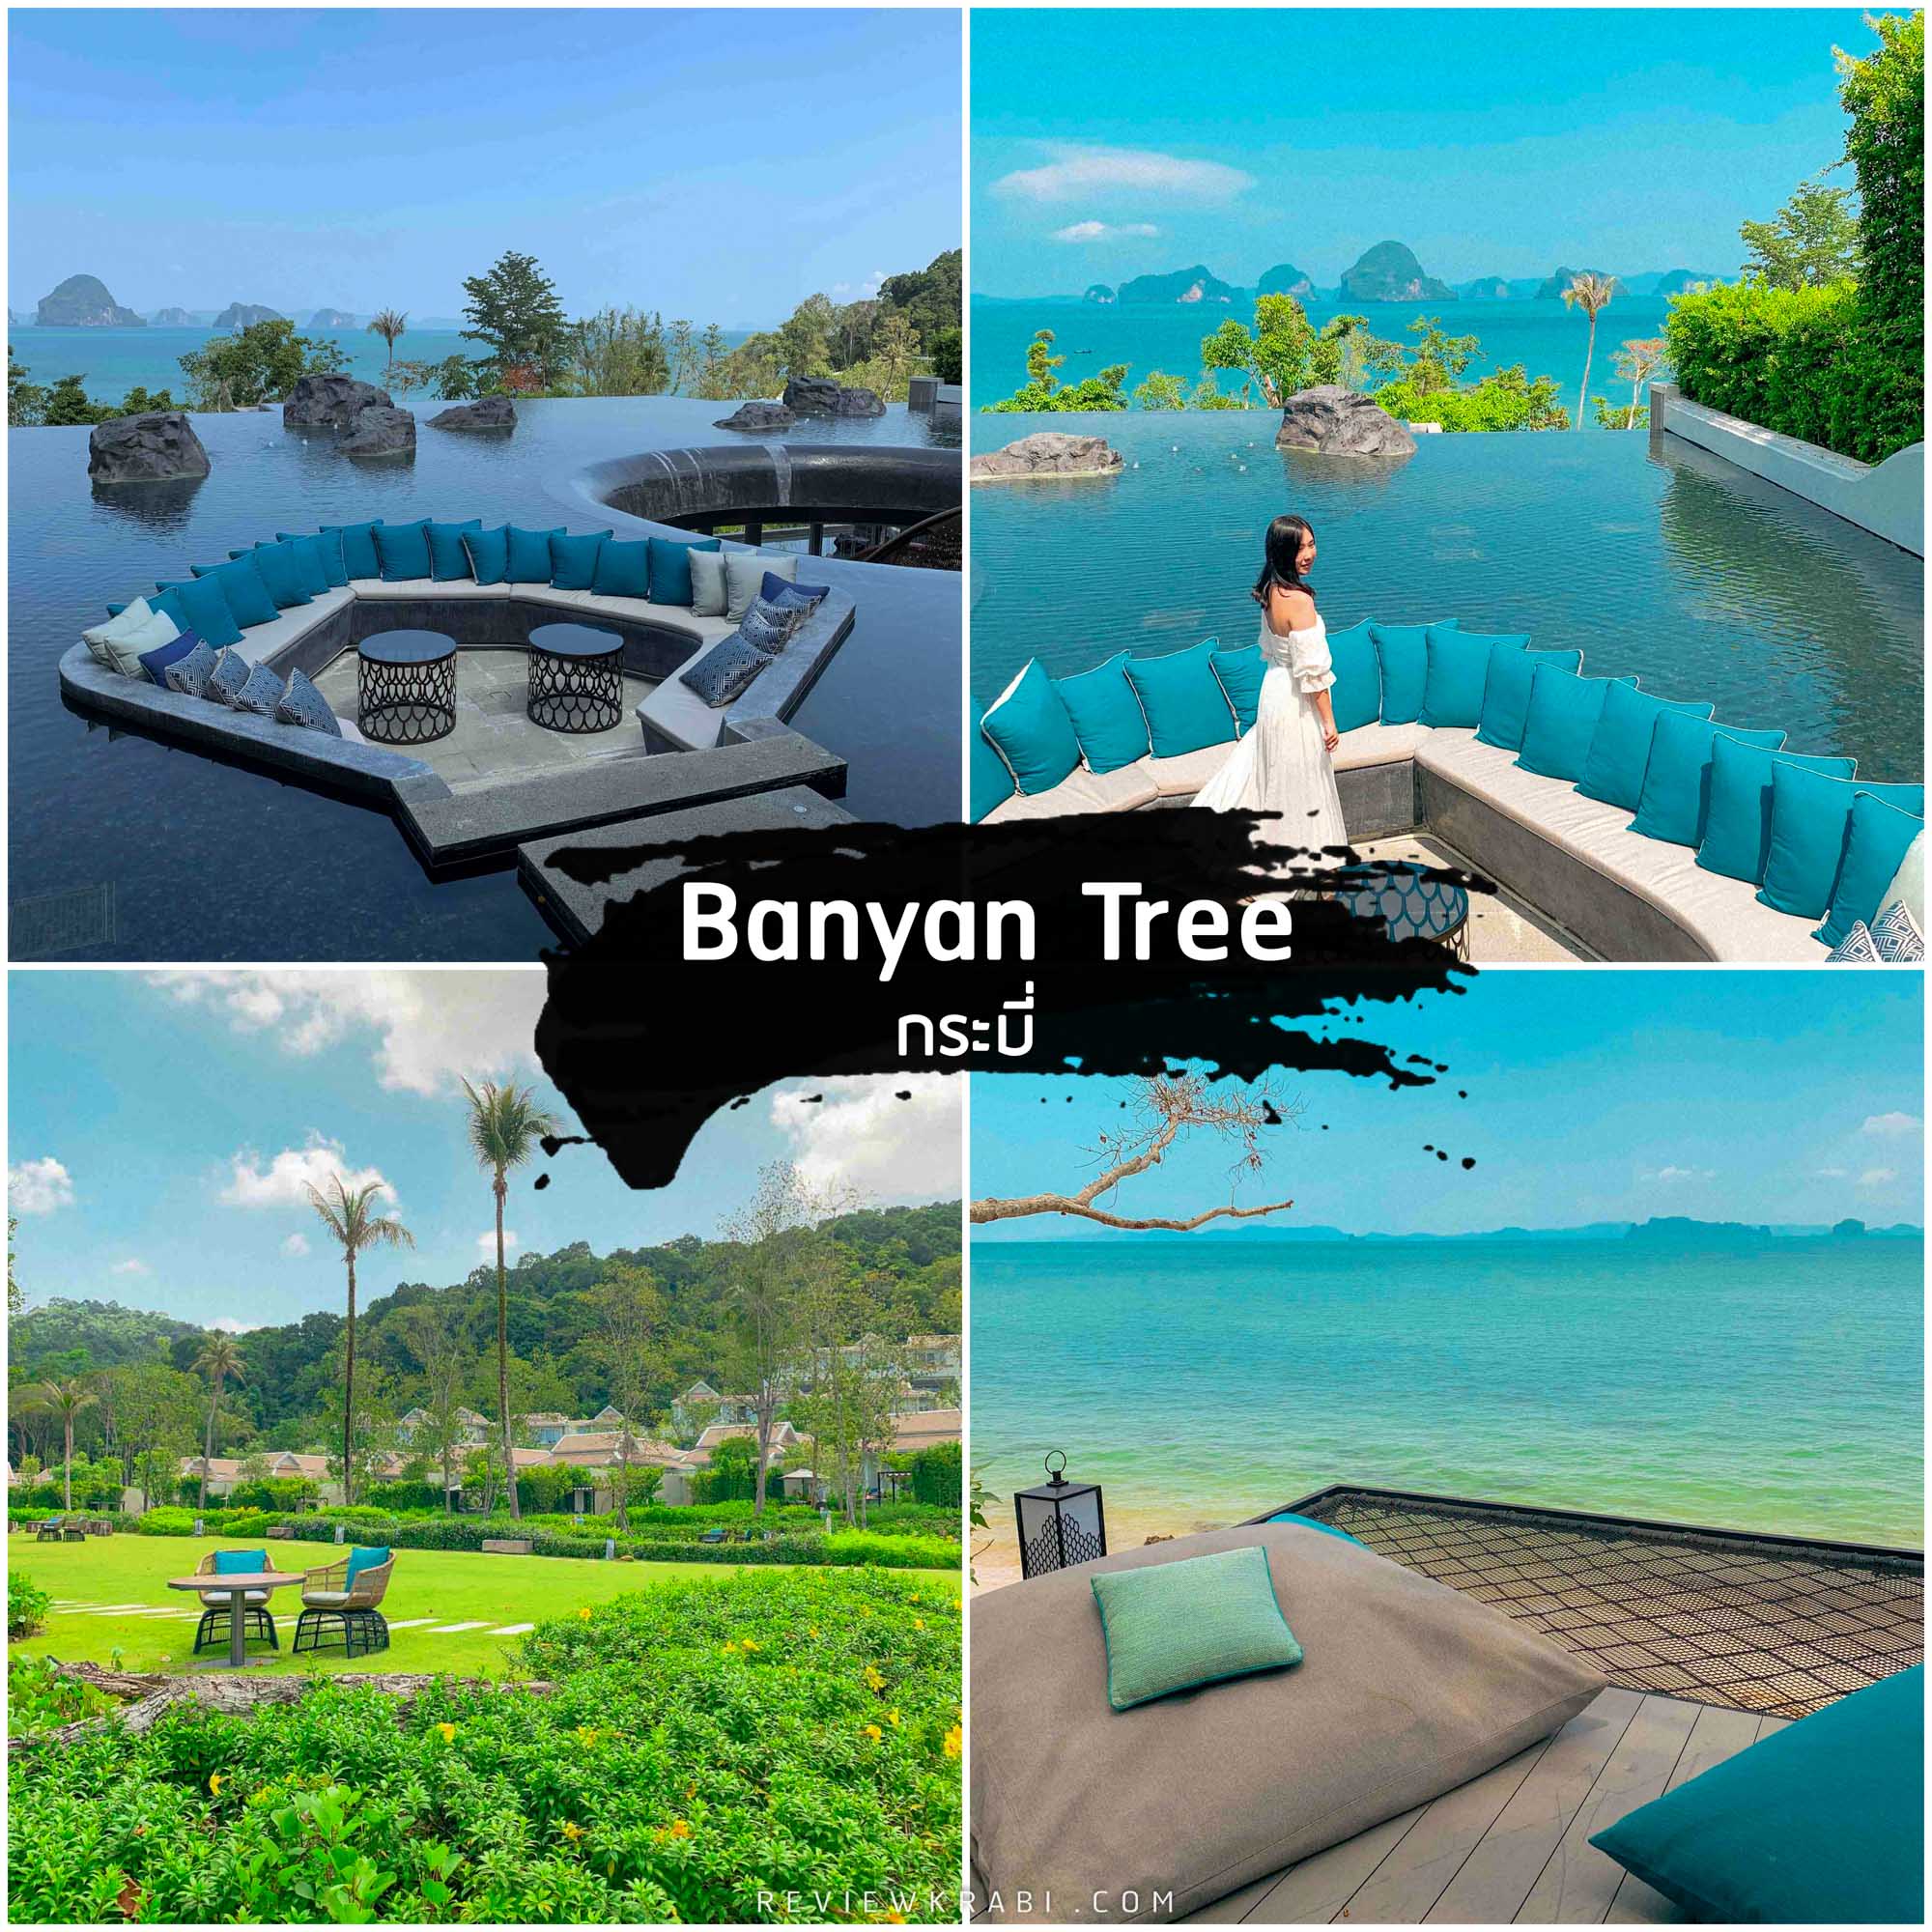 Banyan-Tree-กระบี่ -ที่พักกระบี่-สุดสวยวิวหลักล้าน-วิวทะเล-ภูเขาพร้อมหญ้าสีเขียวๆ-ฟินมากก-มีมุมลับๆน่ารักๆมากมาย-พักผ่อนนอนเล่นในห้องพักหลากหลายสไตล์ที่กว้างขวางไปจนถึงวิลล่าสุดหรูริมหาดทับแขก-ว่ายน้ำในสระส่วนตัวได้ตลอด-24-ชม--กันเลยทีเดียว-การออกแบบโดดเด่นผสมผสานฟิวชั่นของสถาปัตยกรรมตามความเชื่อของตำนานท้องถิ่นของหาดทับแขกเกี่ยวกับพญานาค-ผสมผสานกับความโมเดิร์นทันสมัยสะดวกสบายระดับ-5-ดาว-ทำให้ความสวยงามลงตัวไม่แพ้ที่ไหนเลยครับ-10/10 กระบี่,จุดเช็คอิน,ที่เที่ยว,ร้านกาแฟ,คาเฟ่,ทะเล,ภูเขา,ที่เที่ยวกระบี่